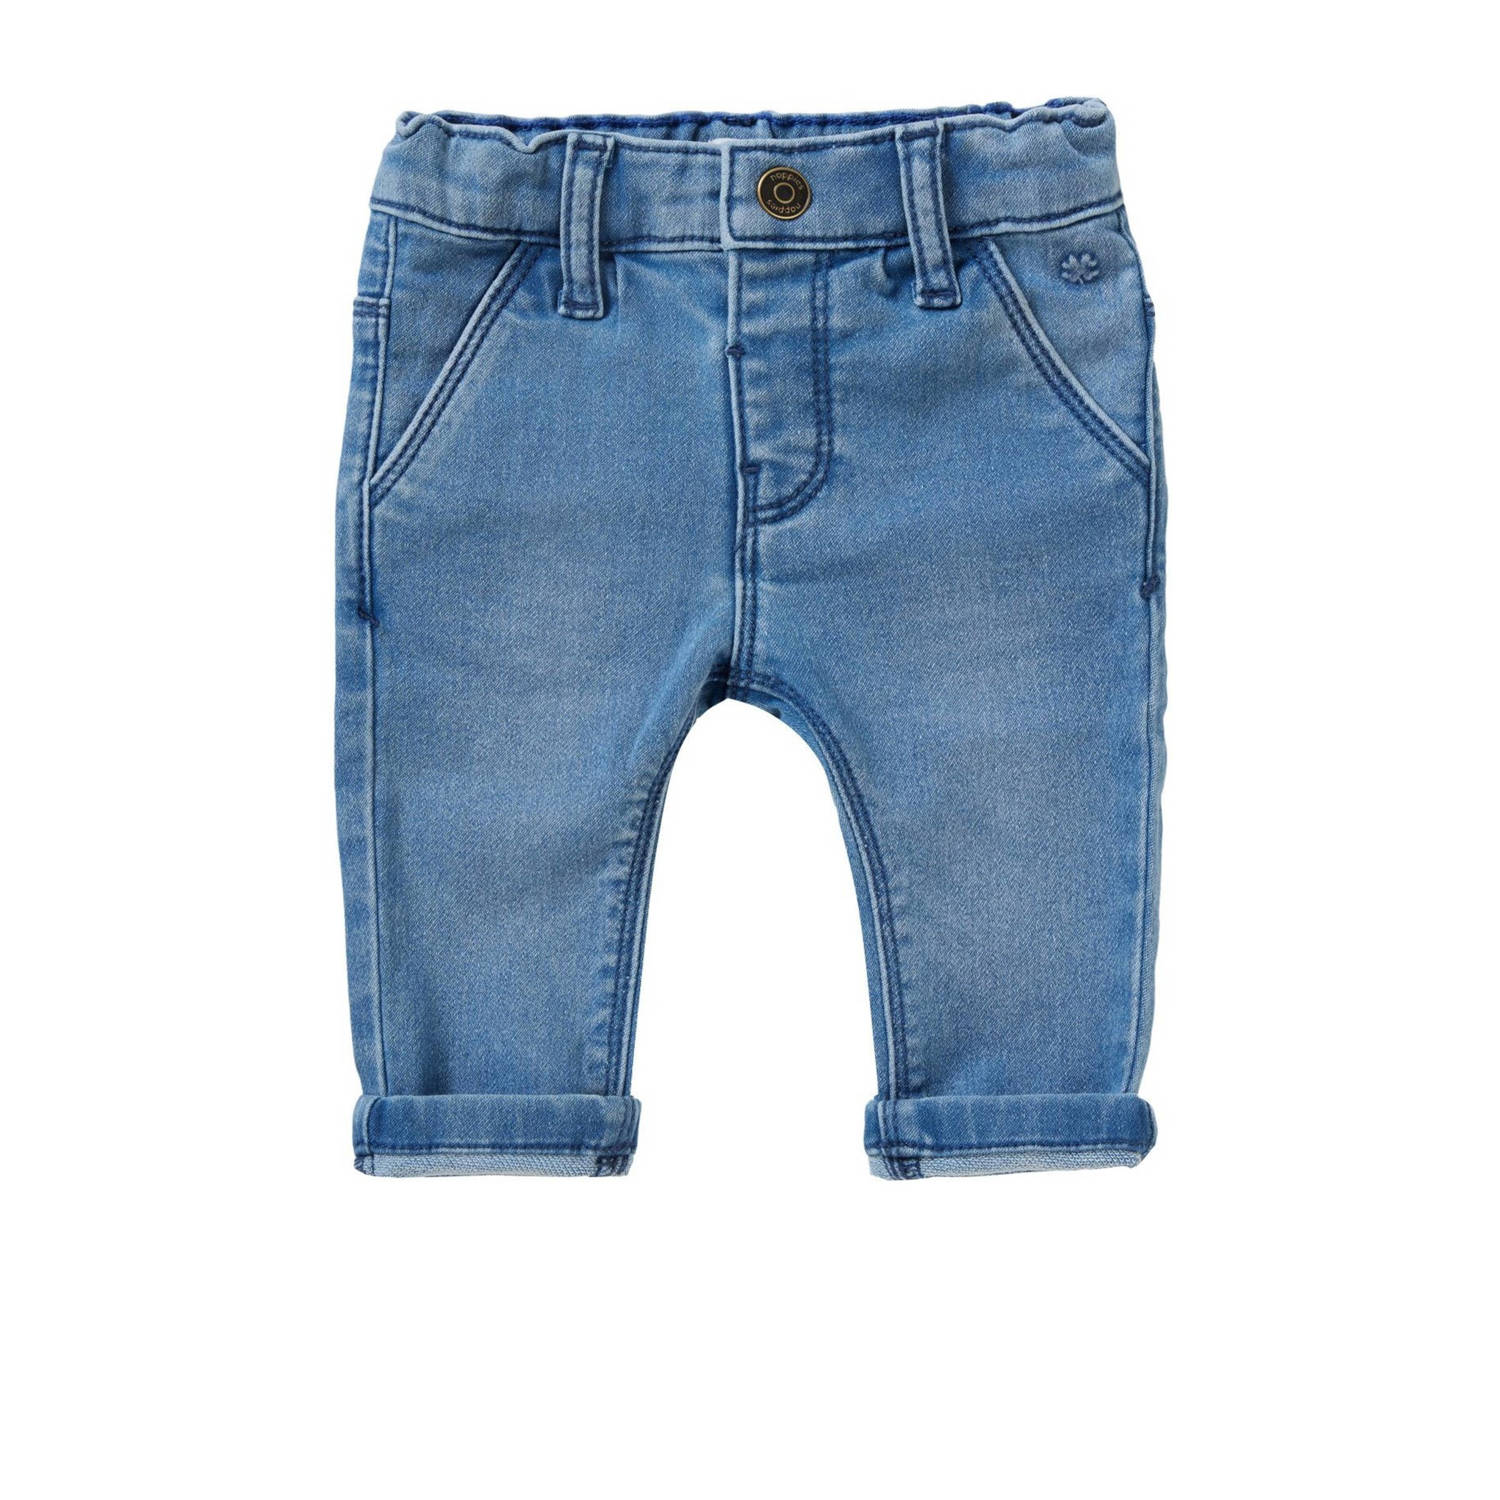 Noppies baby regular fit jeans medium blue denim Blauw Effen 50